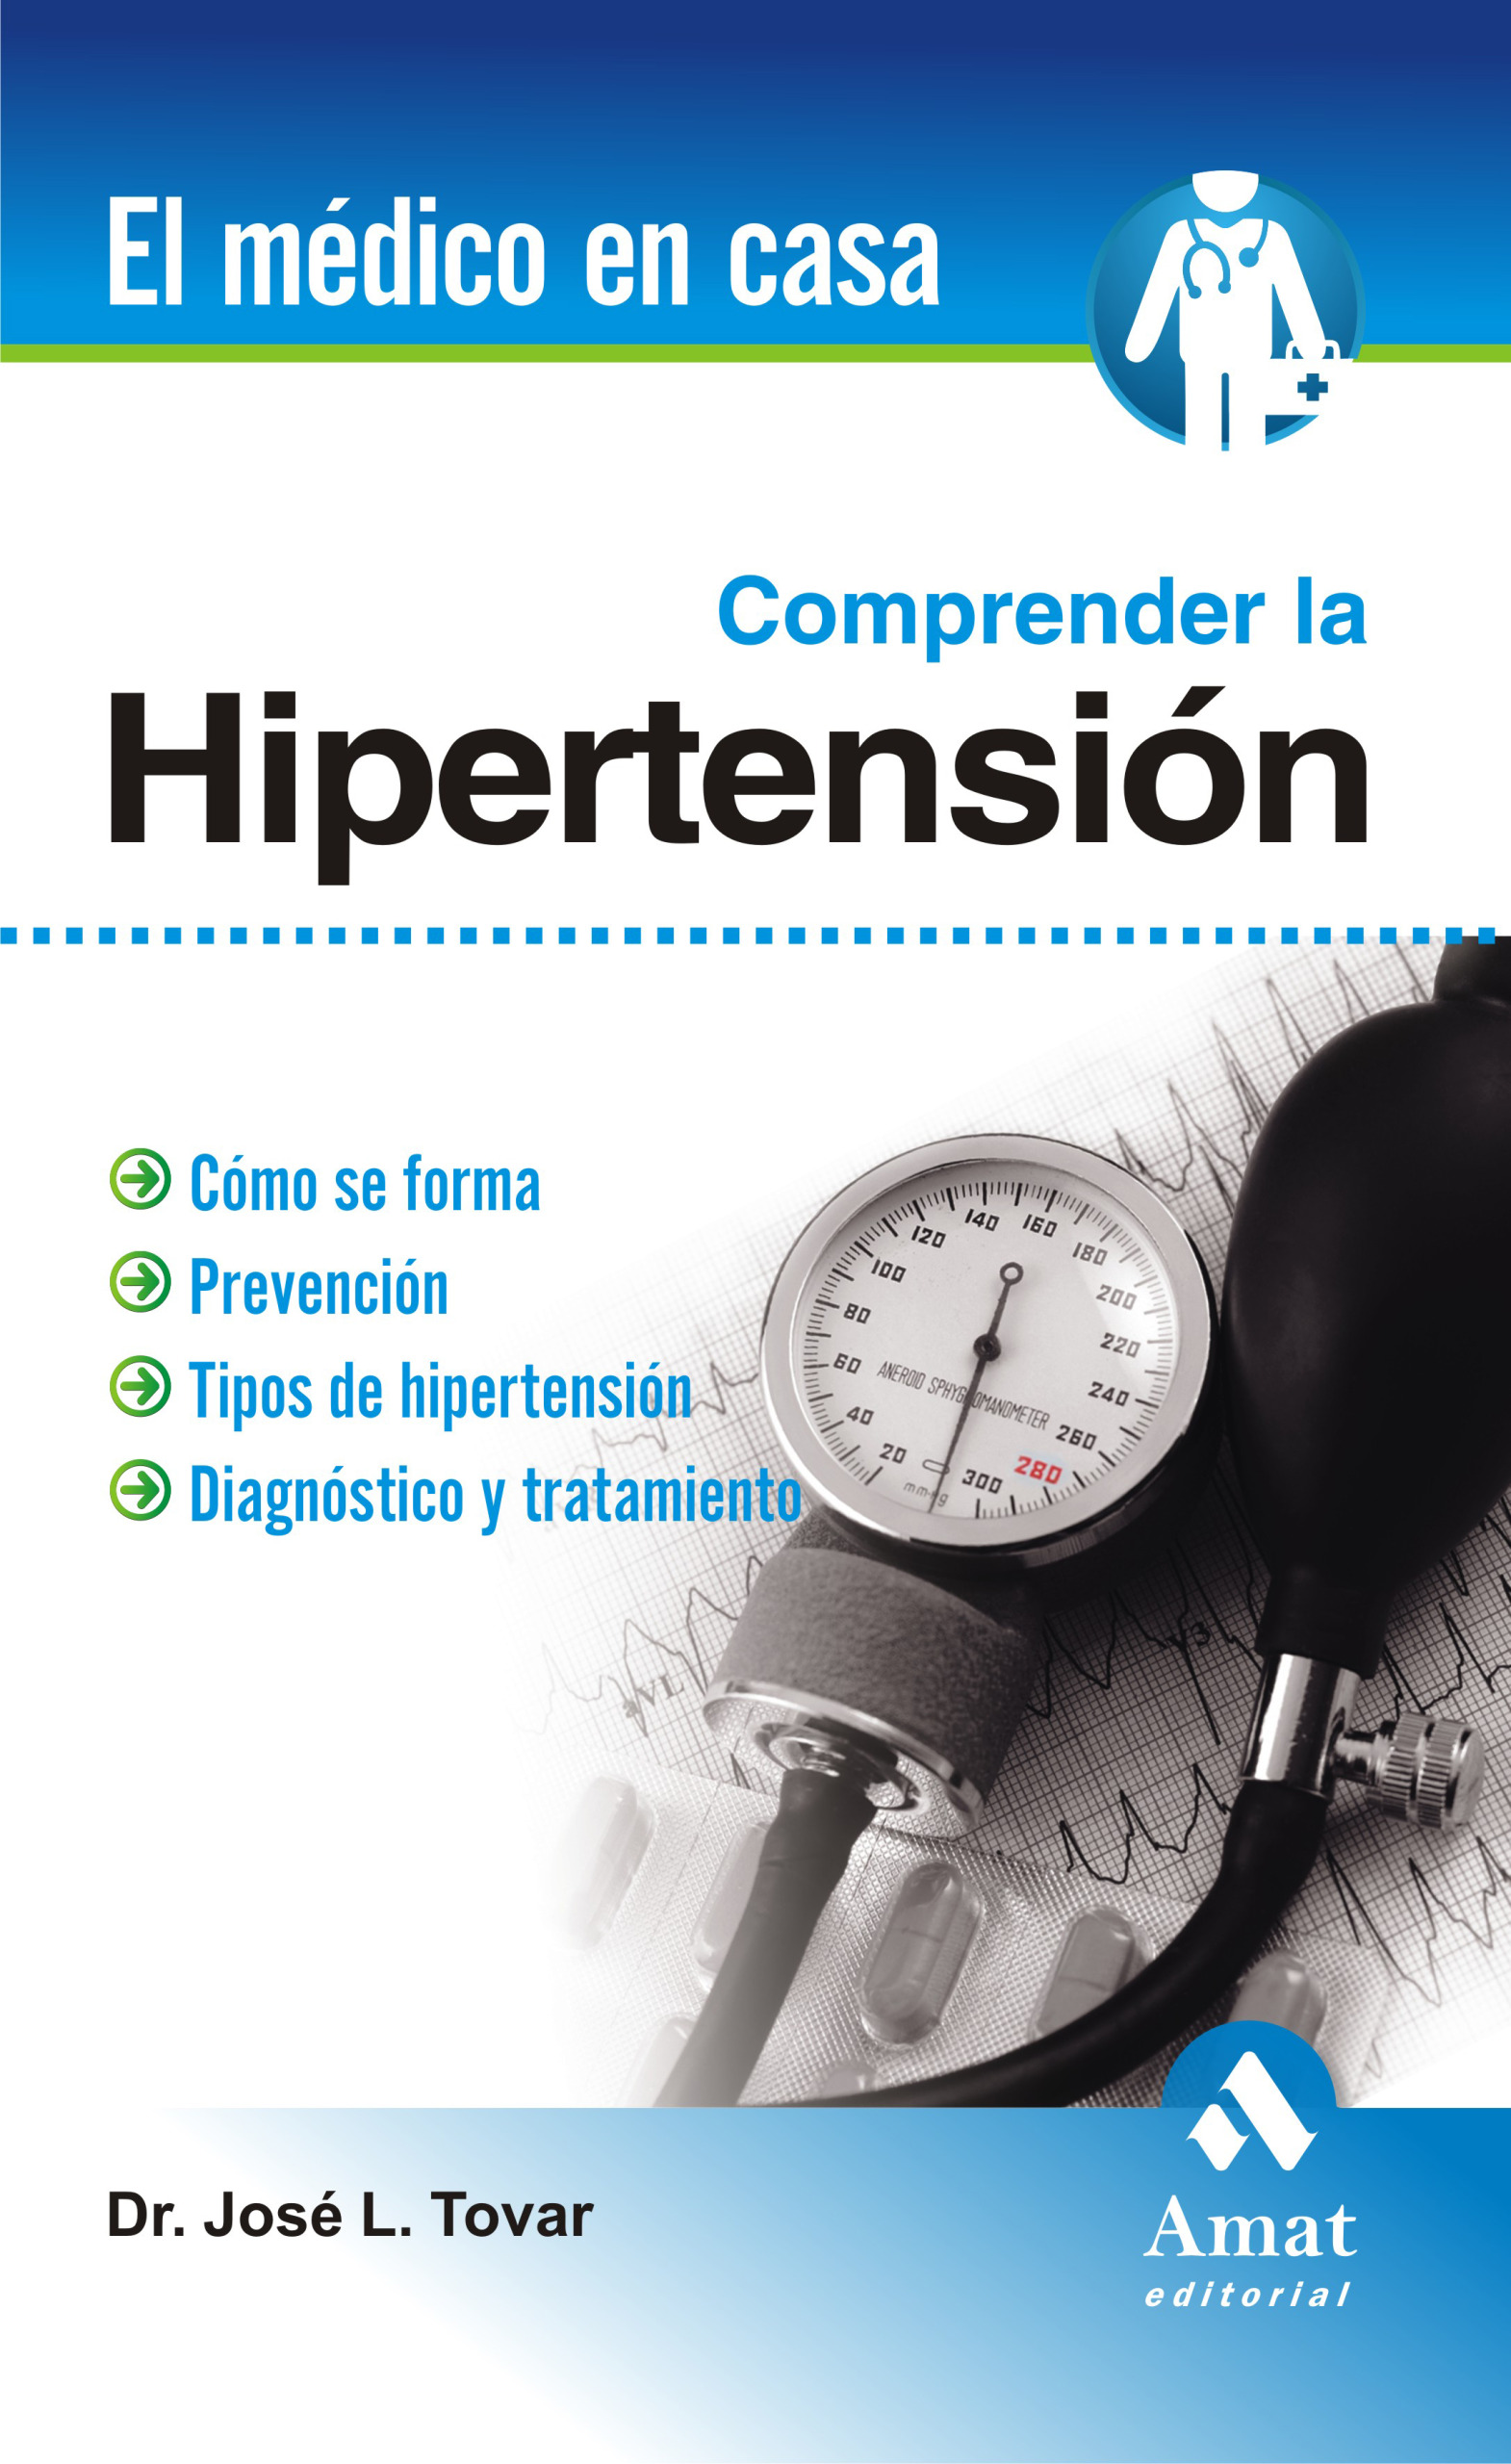 Comprender la hipertensión arterial | José Luís Tovar | Libros para vivir mejor